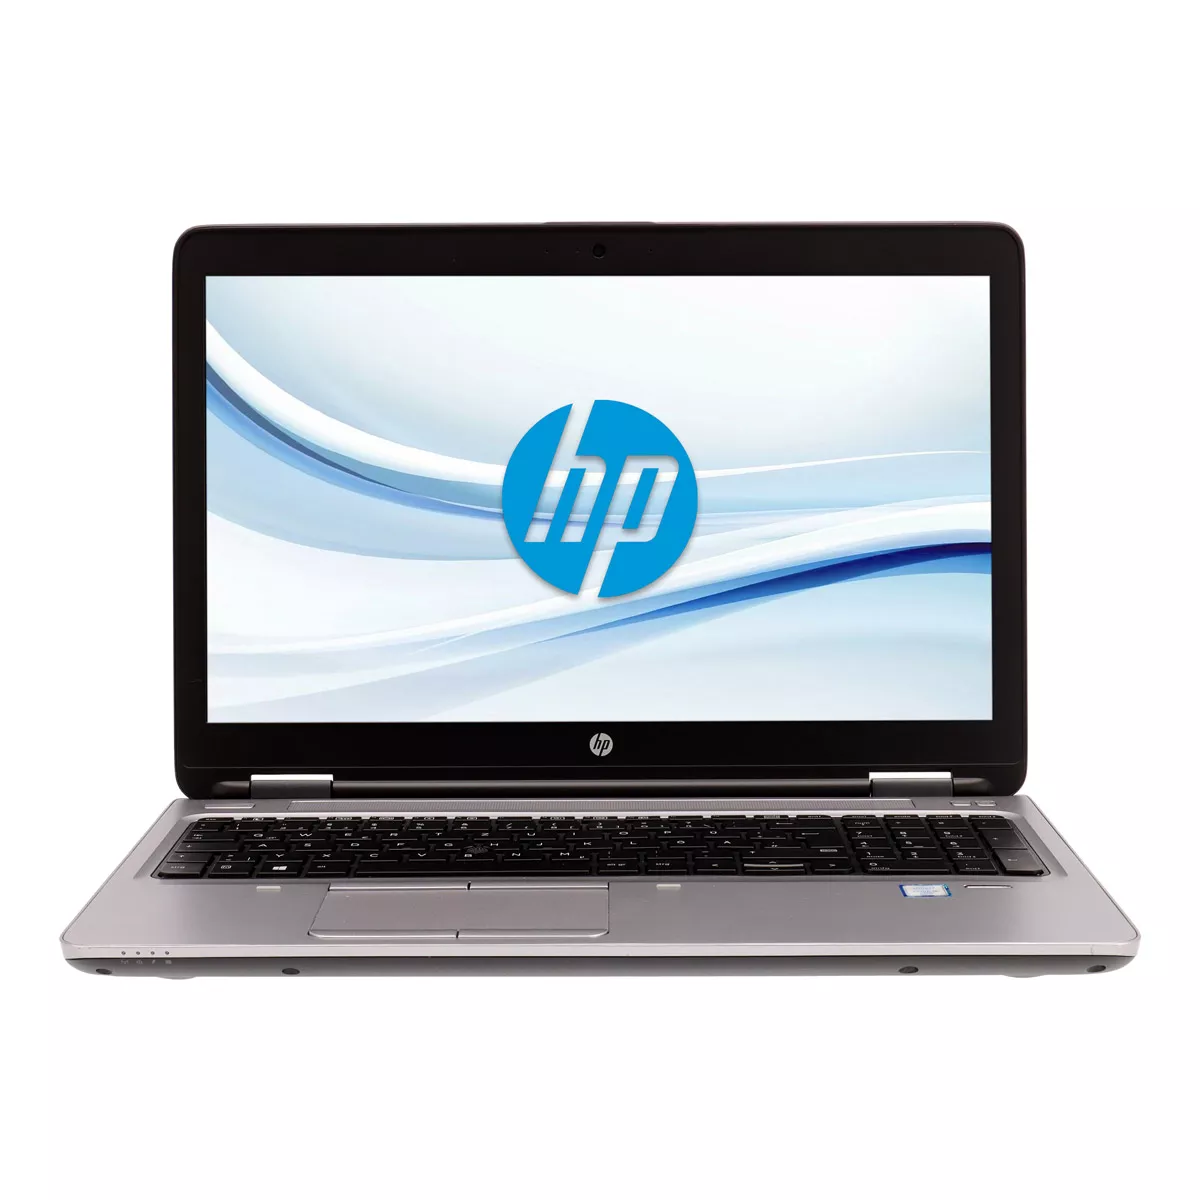 HP ProBook 650 G2 Core i5 6300U 8 GB DDR4 240 GB M.2 SSD Webcam A+